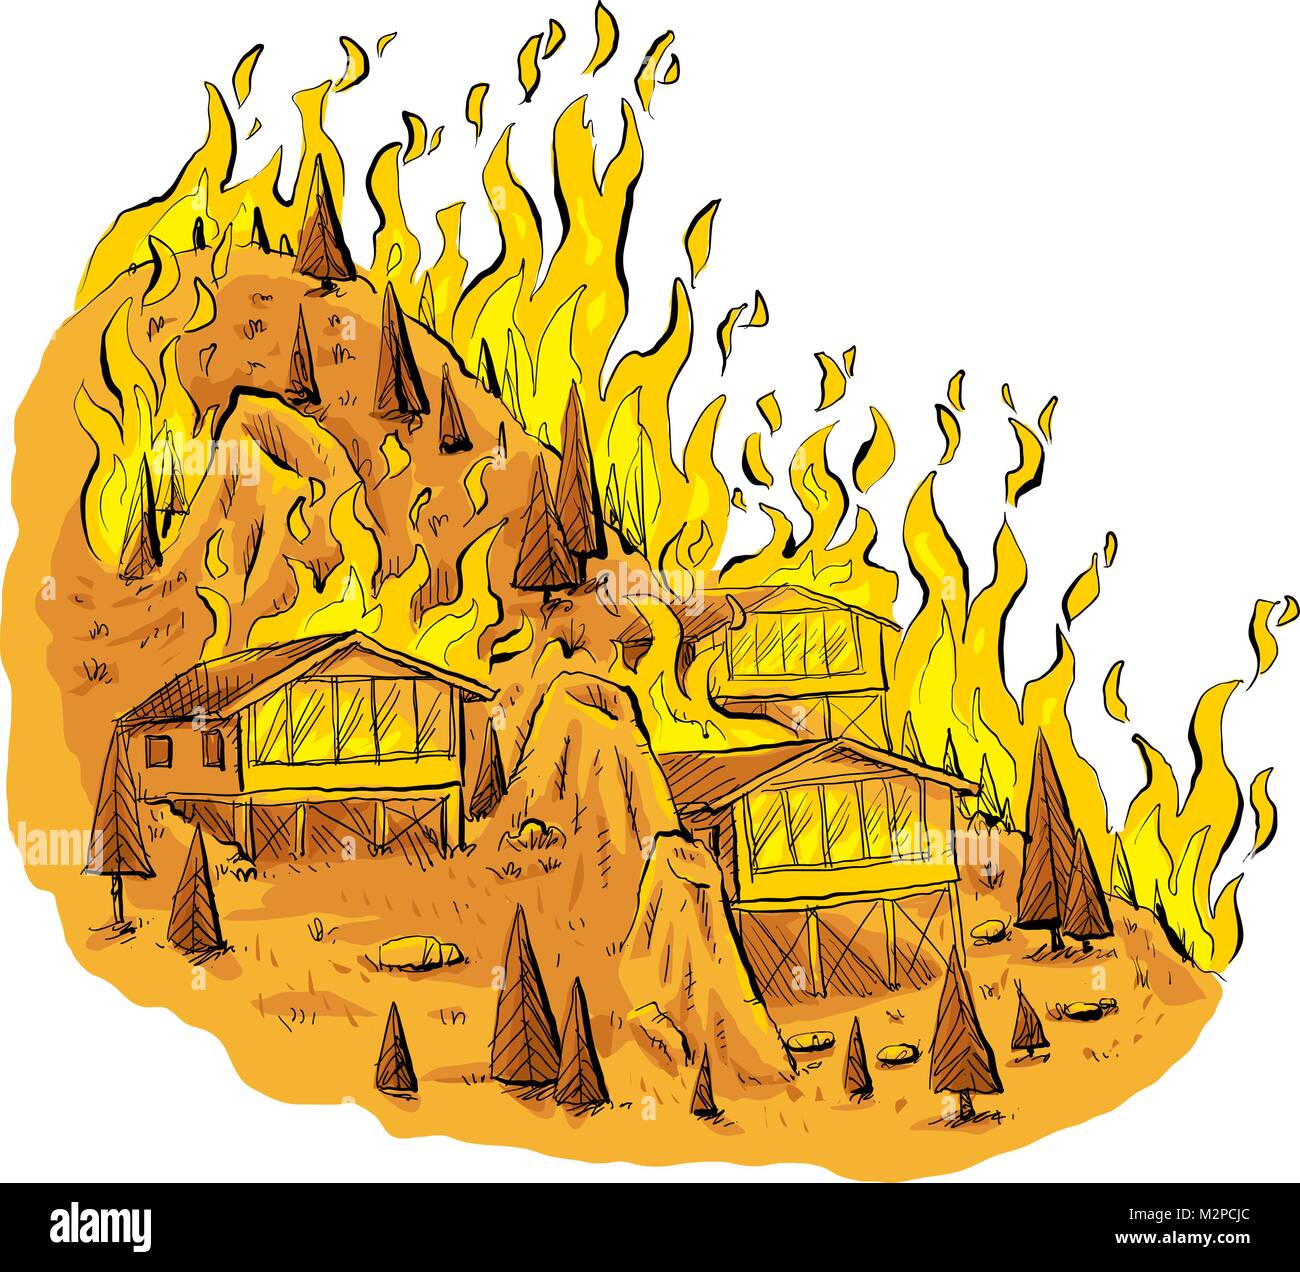 Un dessin animé d'un feu de forêt qui fait rage à travers les arbres et les maisons sur une colline rocheuse. Illustration de Vecteur